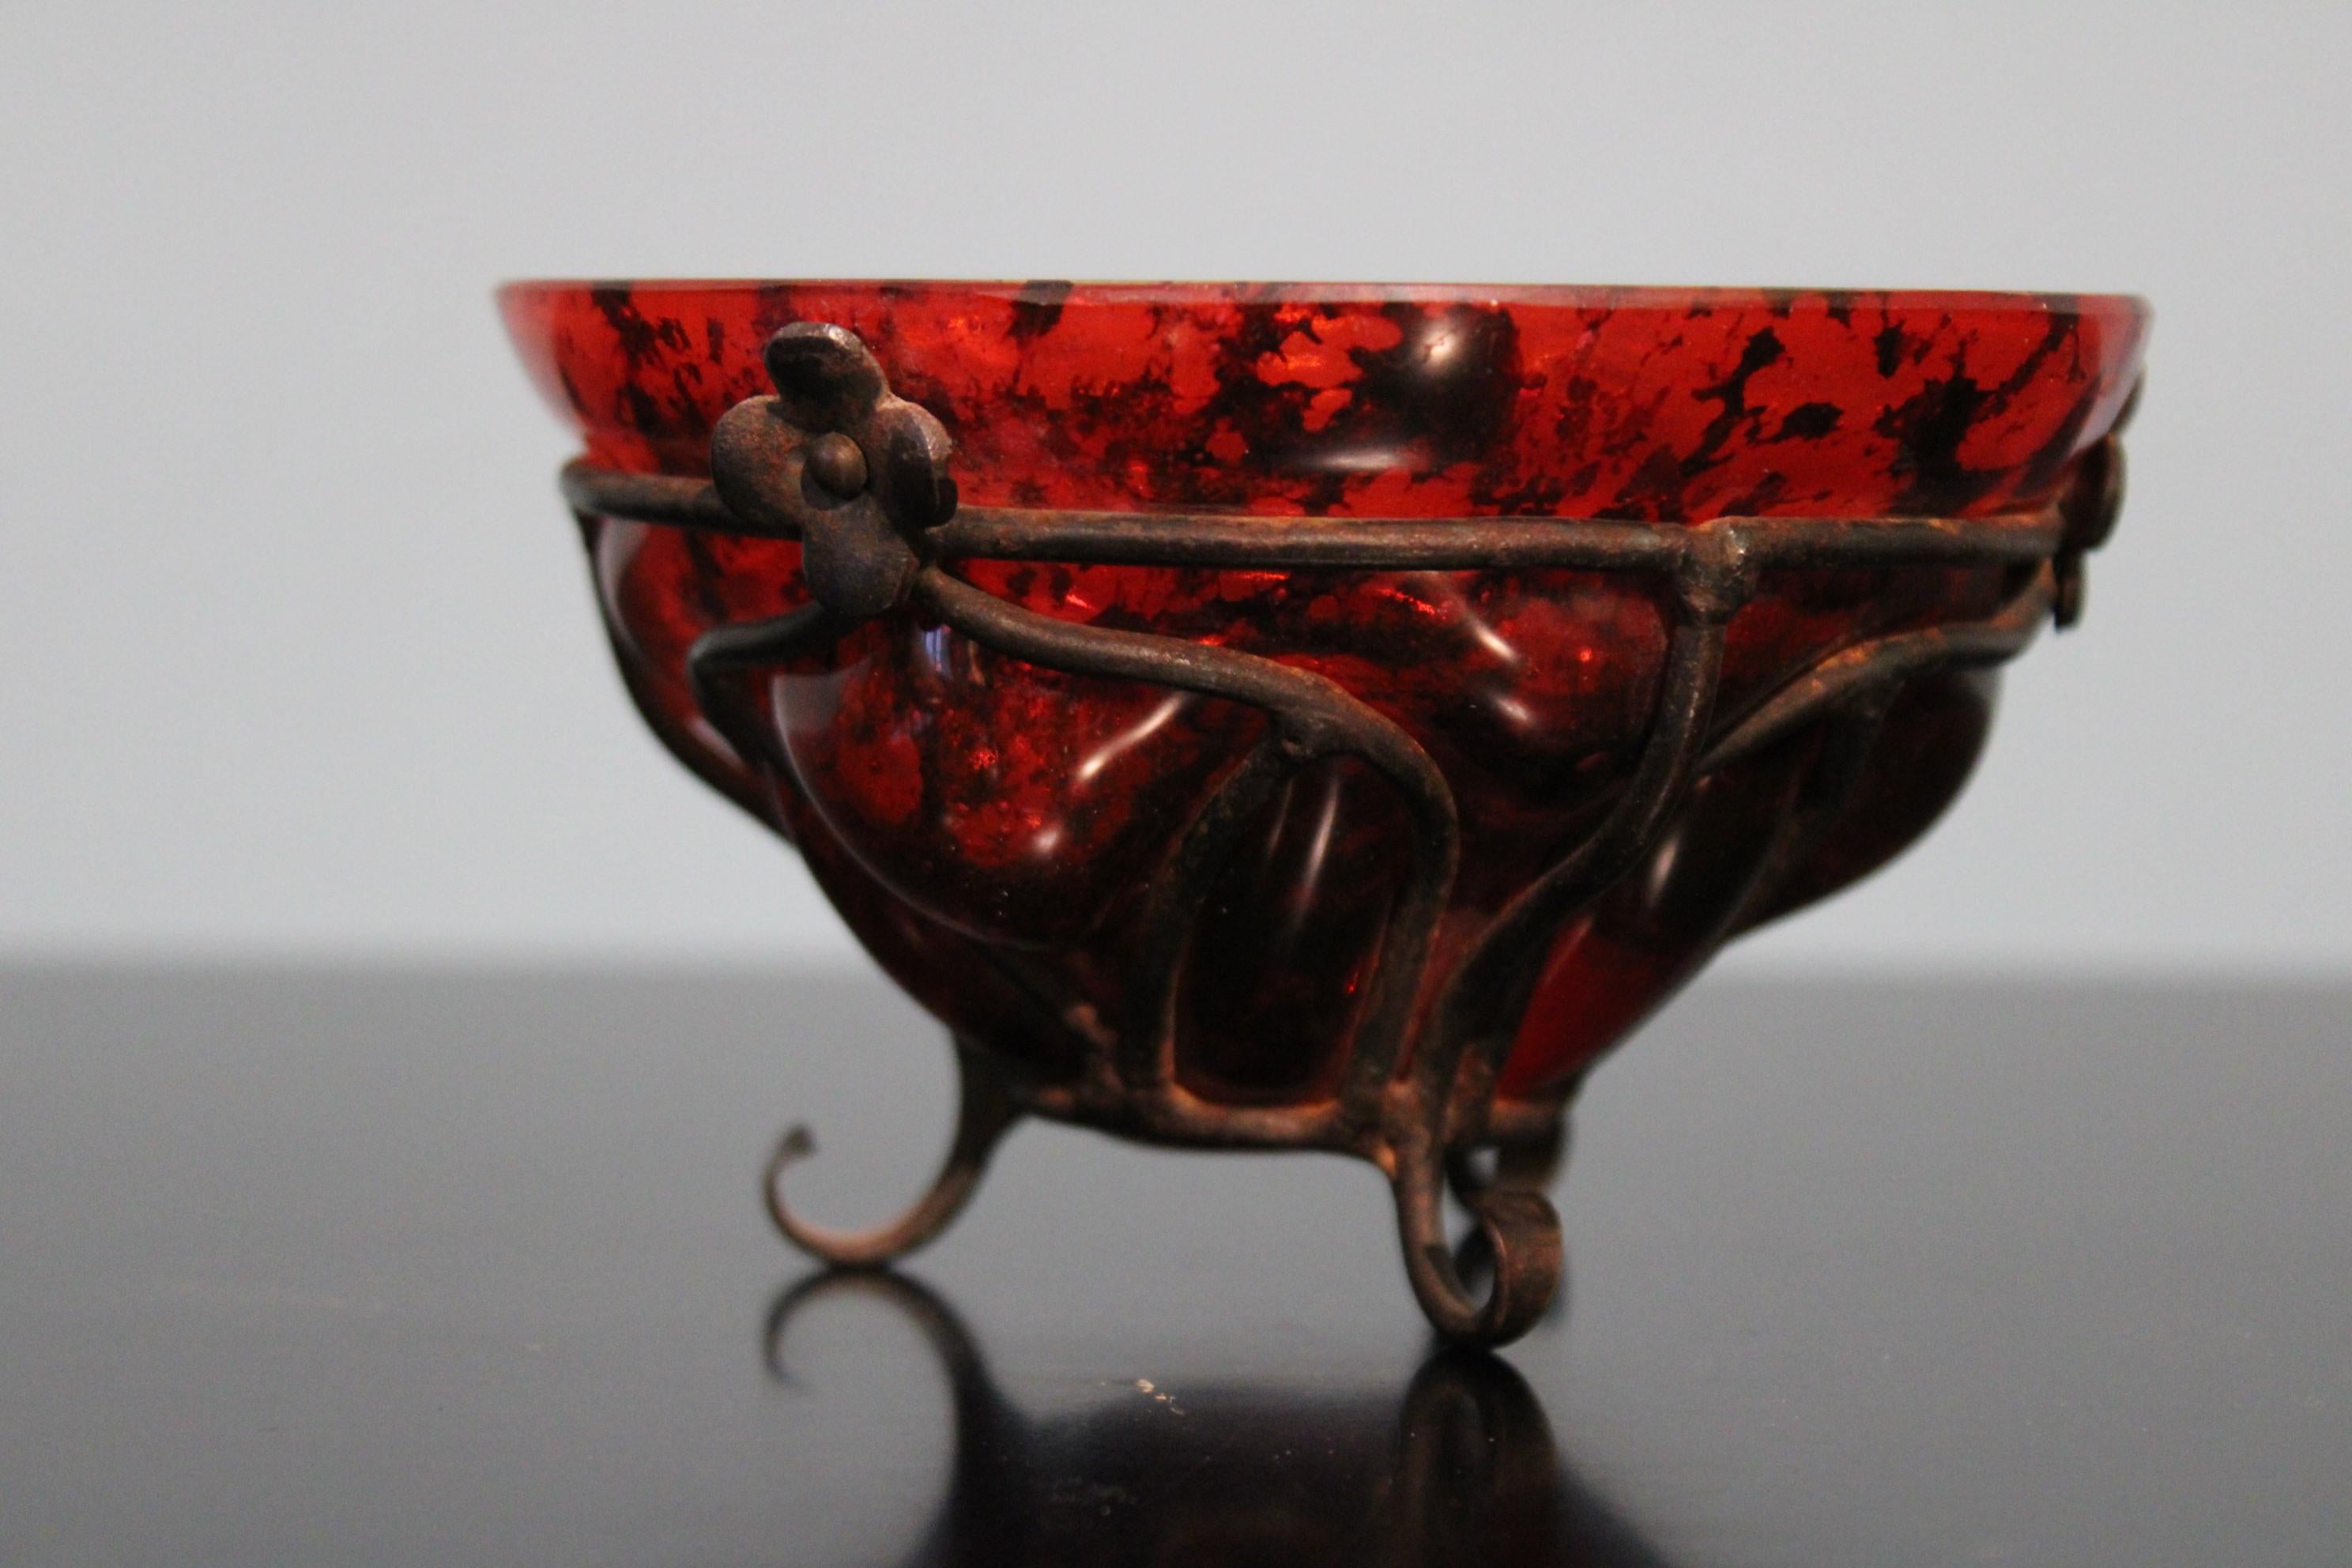 Petit vase de Daum Nancy et Louis Majorelle.
Vase en verre soufflé dans un cadre métallique. Couleur rouge. 
Circa 1920, période Art nouveau.
 